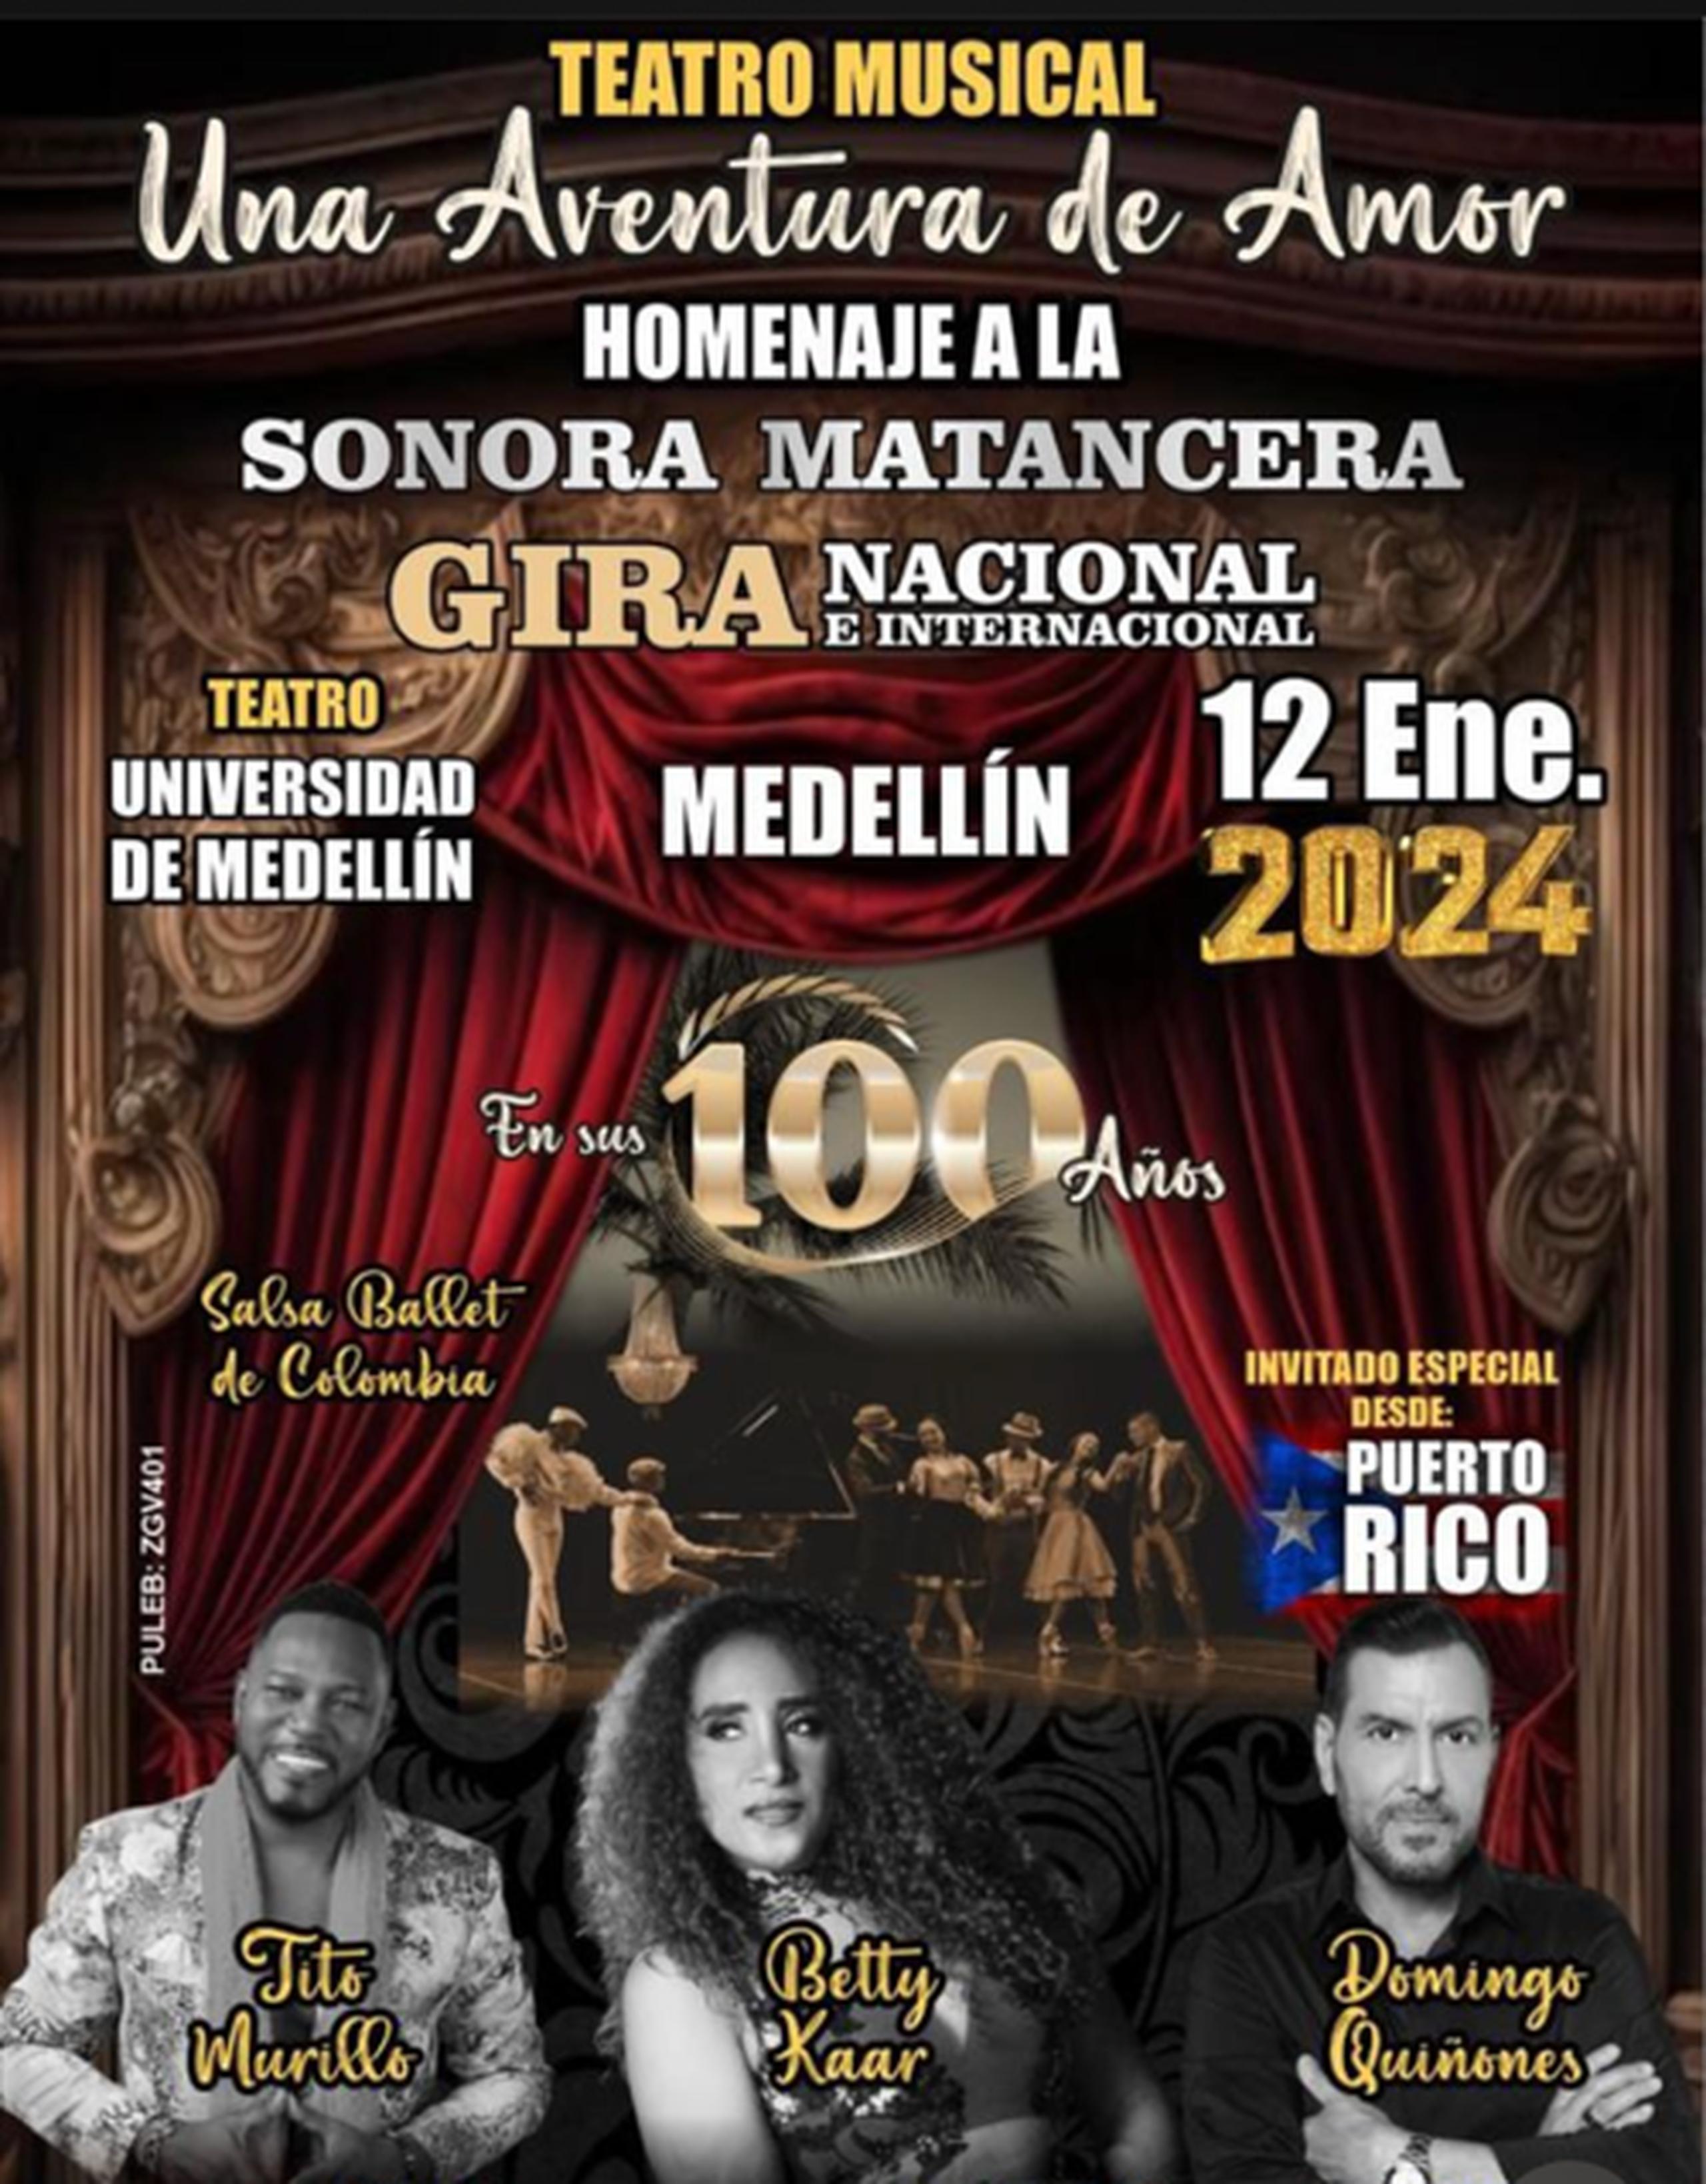 Afiche de la obra "Una aventura de amor", que subirá a escena en enero de 2024 en Medellín.